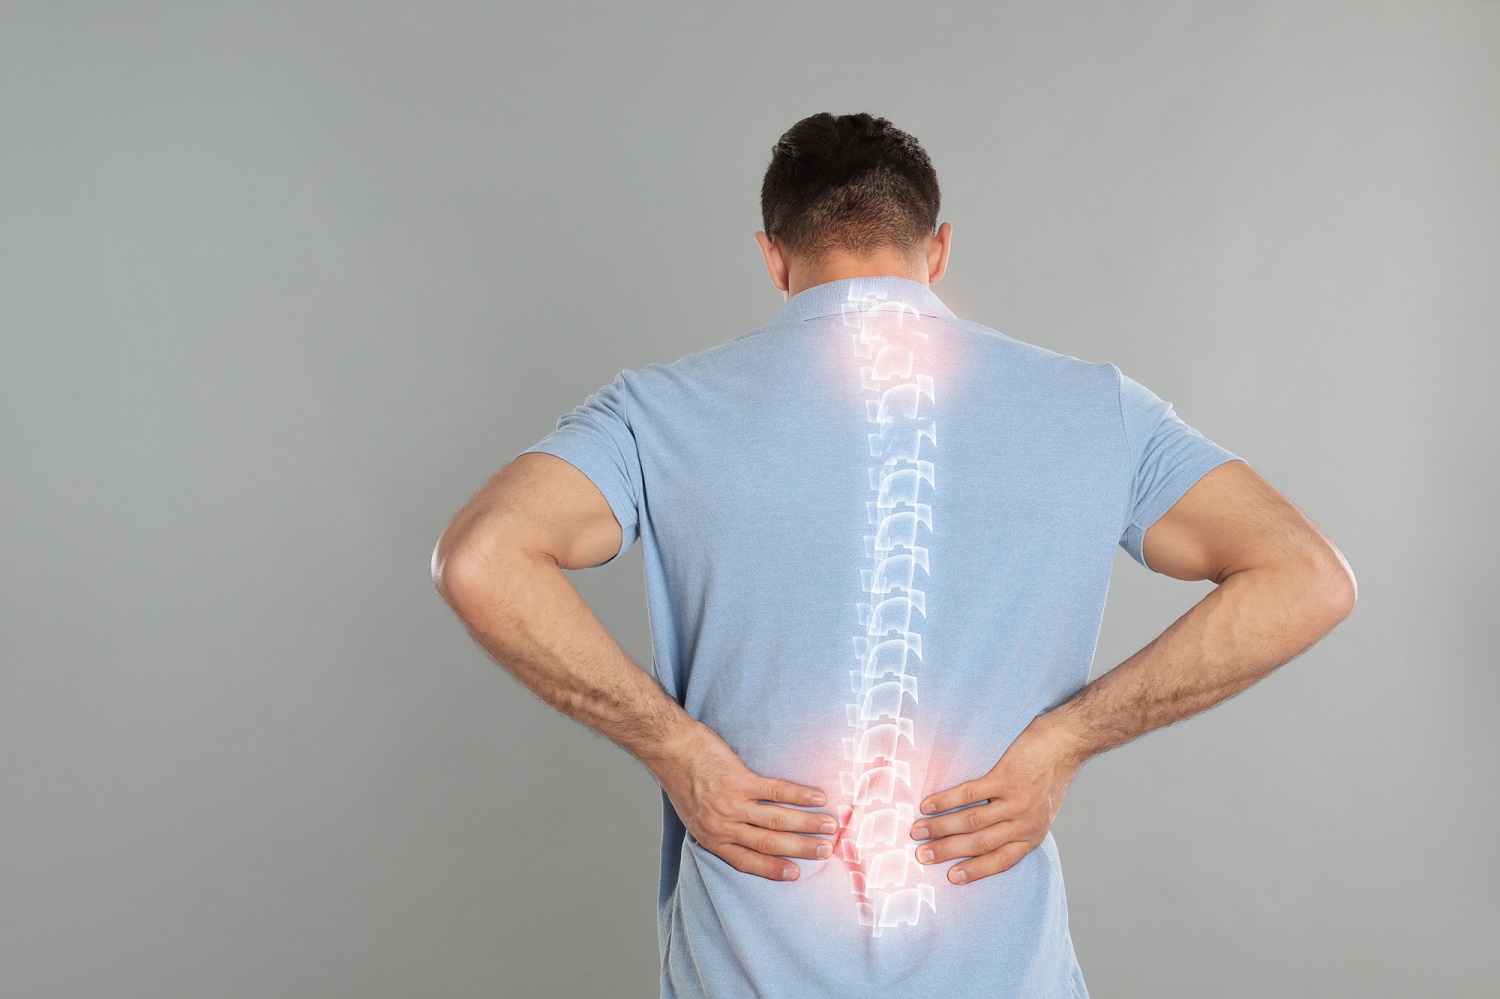 Đau lưng bên phải là hiện tượng đau nhức âm ỉ ở vùng thắt lưng gần eo hoặc bả vai phải